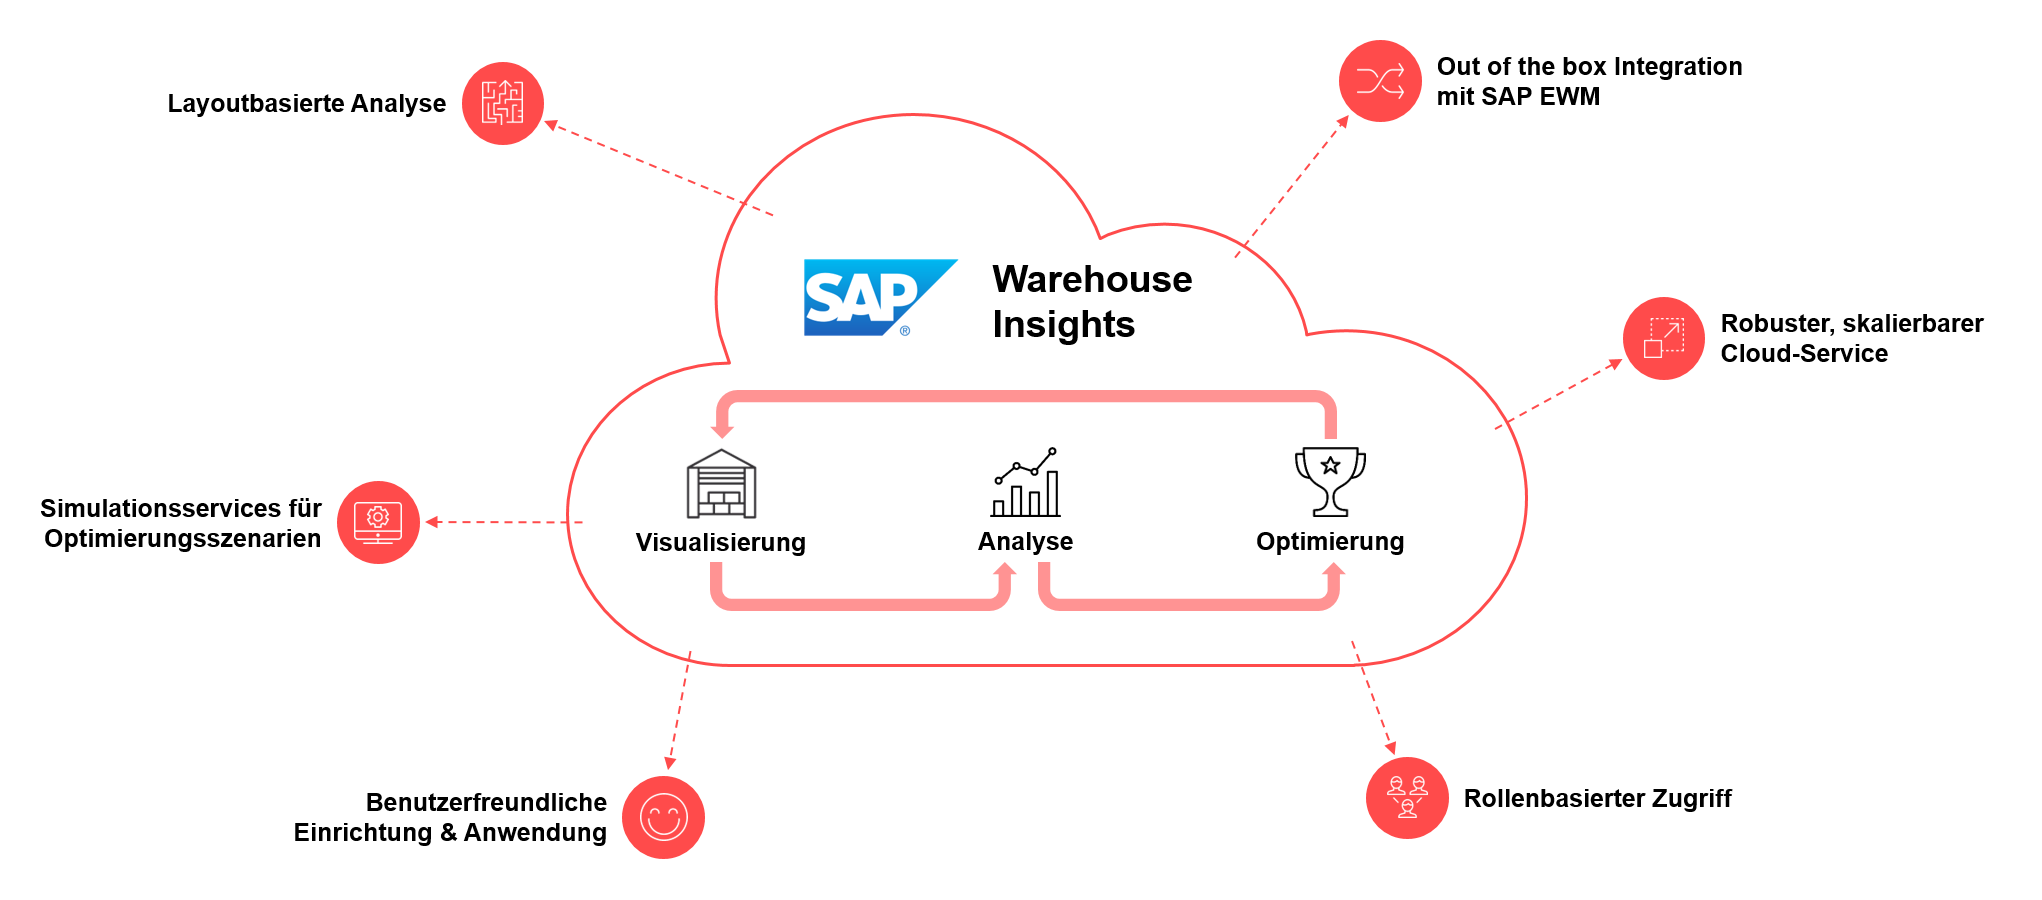 Bild einer beschrifteten Wolke, Übersicht SAP Warehouse Insights, Planungswerkzeug zur Analyse, Visualisierung und Optimierung des Lagerbetriebs